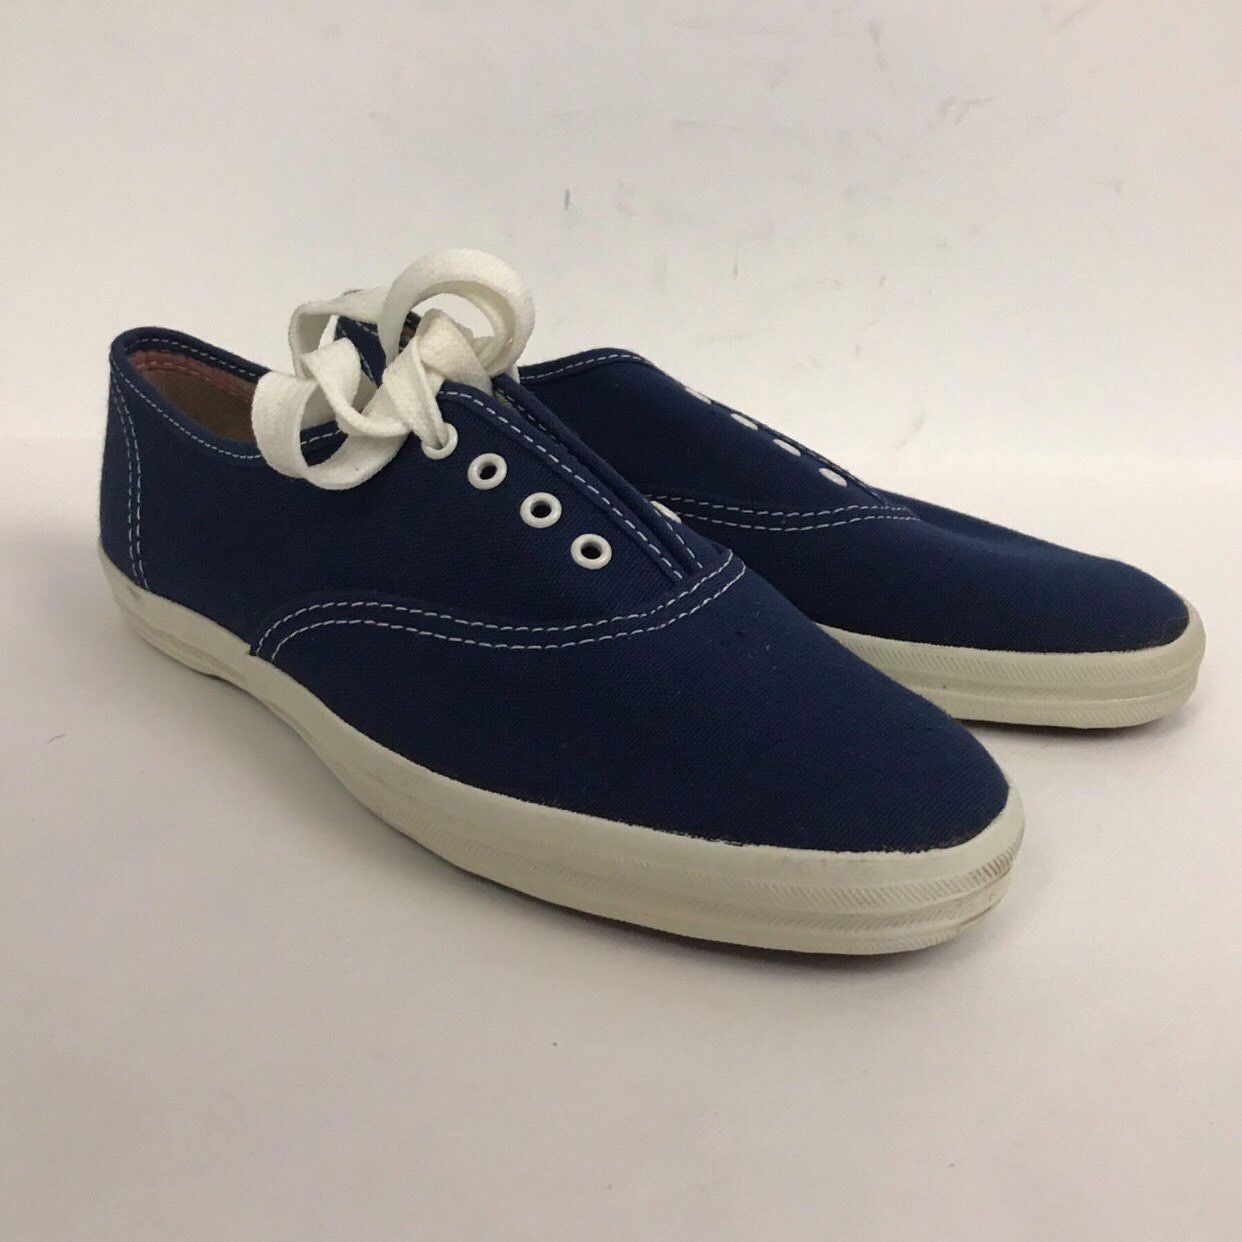 1980s Keds Tennis Shoes / Unworn Navy Blue Canvas Cotton Oxford Shoes 6 ...